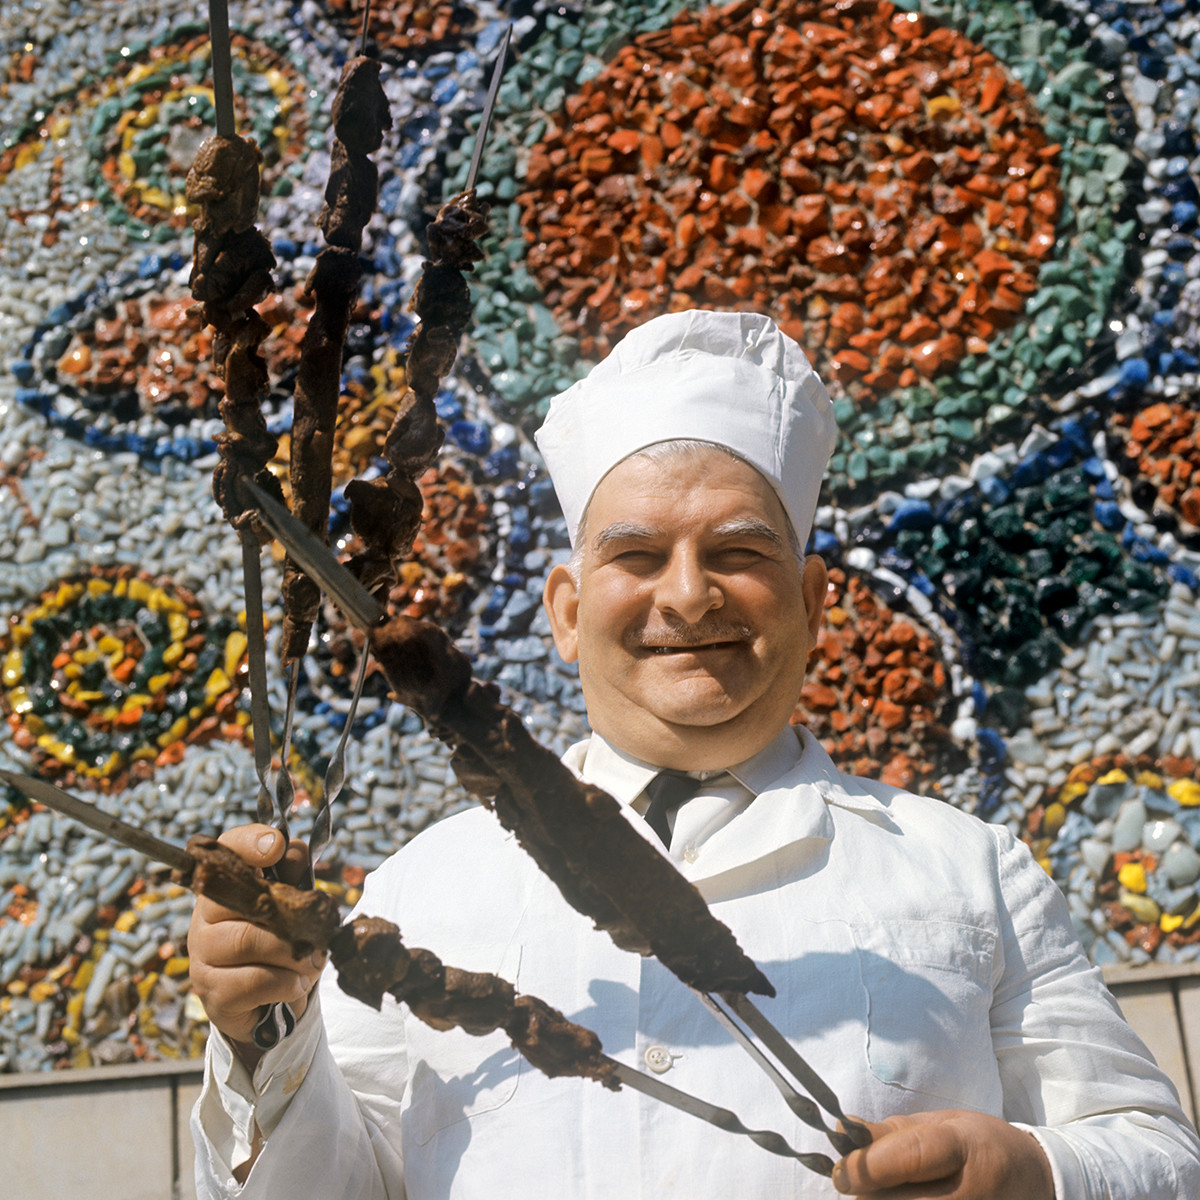 シャシリクの串をかかげる料理長、グルジア共和国、1971年